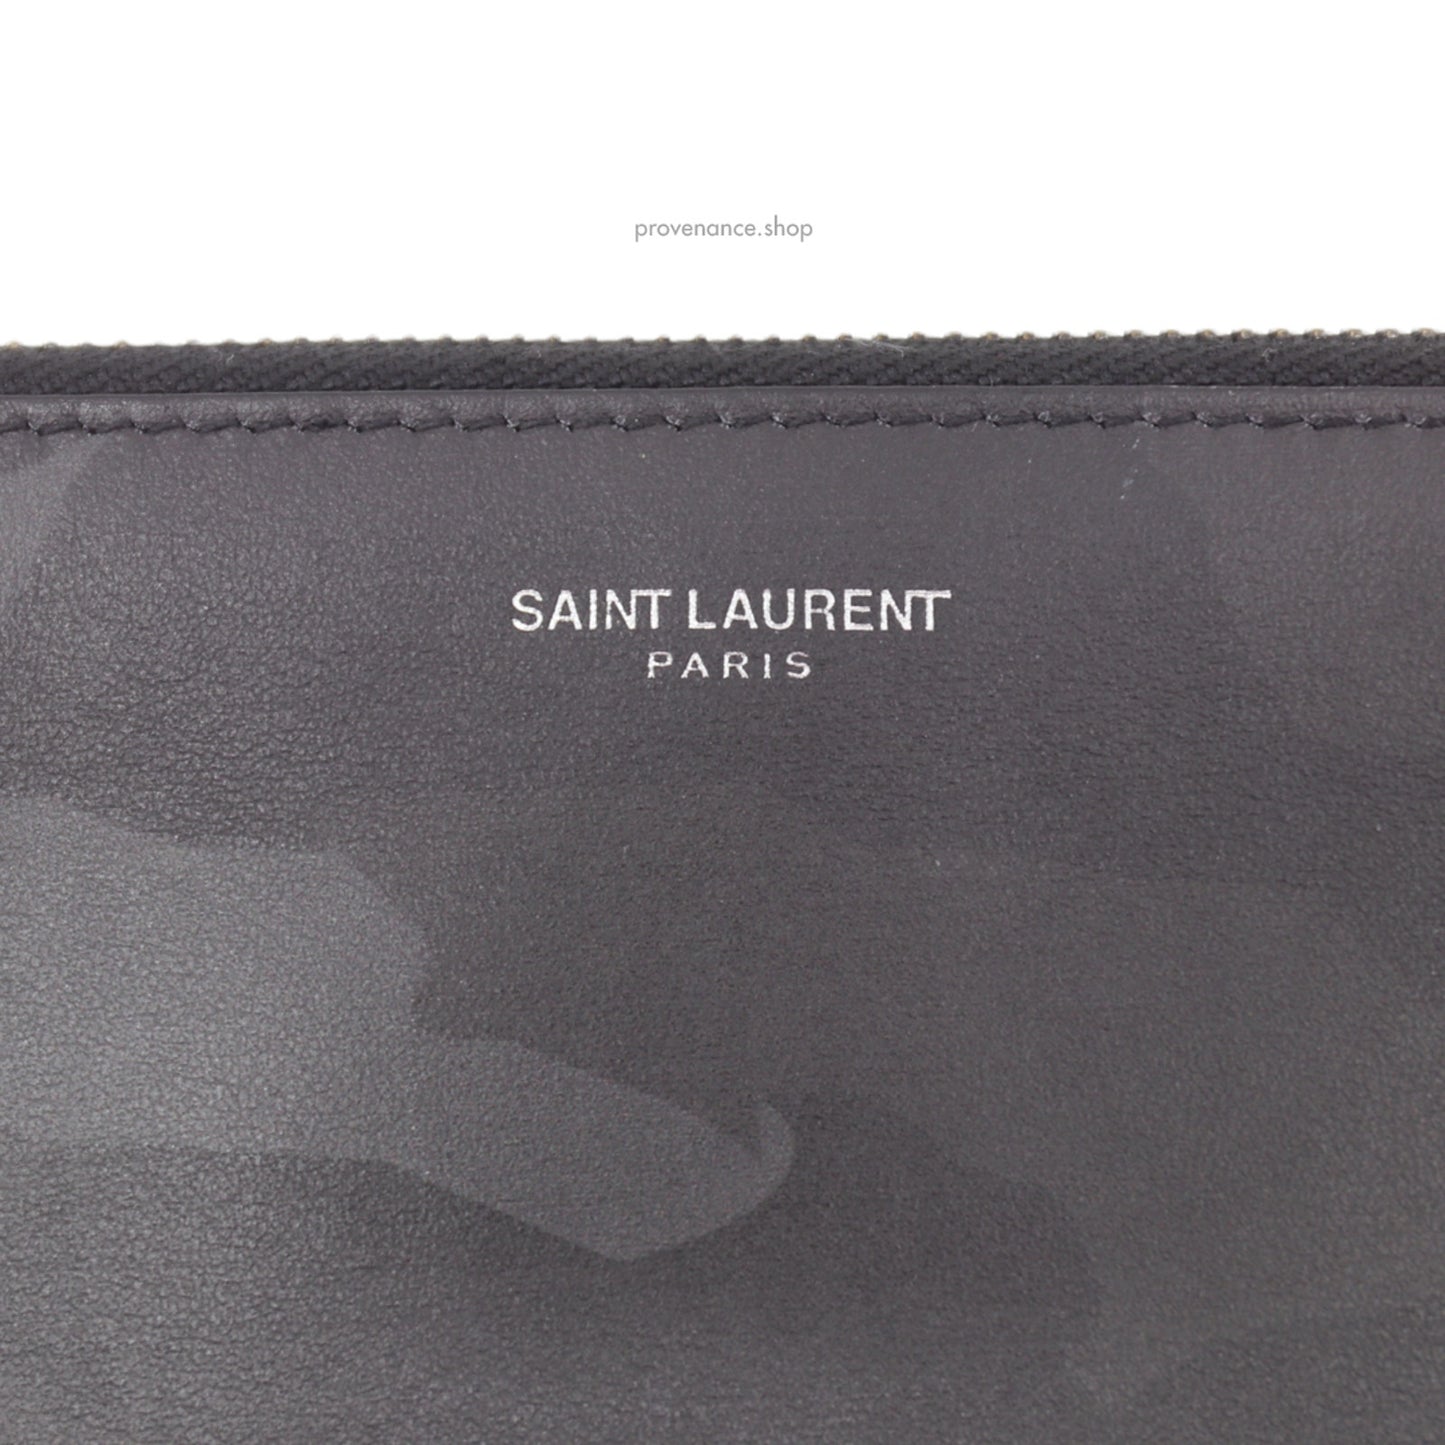 🔴 Saint Laurent Paris SLP Zipped Pouch - Shadow Camo